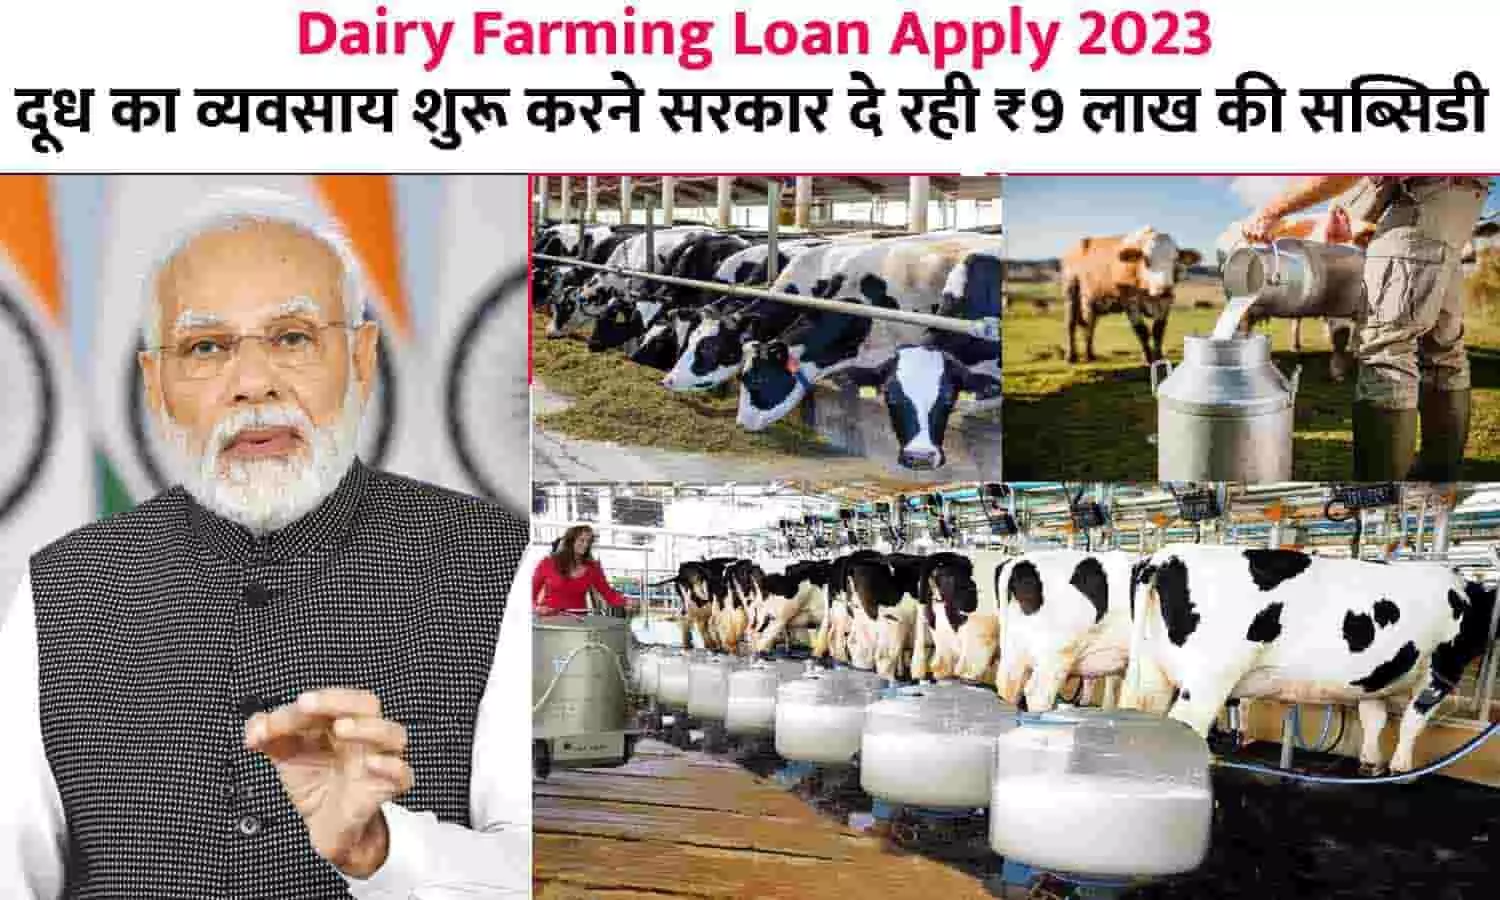 Dairy Farming Loan Apply Big Alert 2023: दूध का व्यवसाय शुरू करने सरकार दे रही ₹9 लाख की सब्सिडी, यहां से करे Online Application